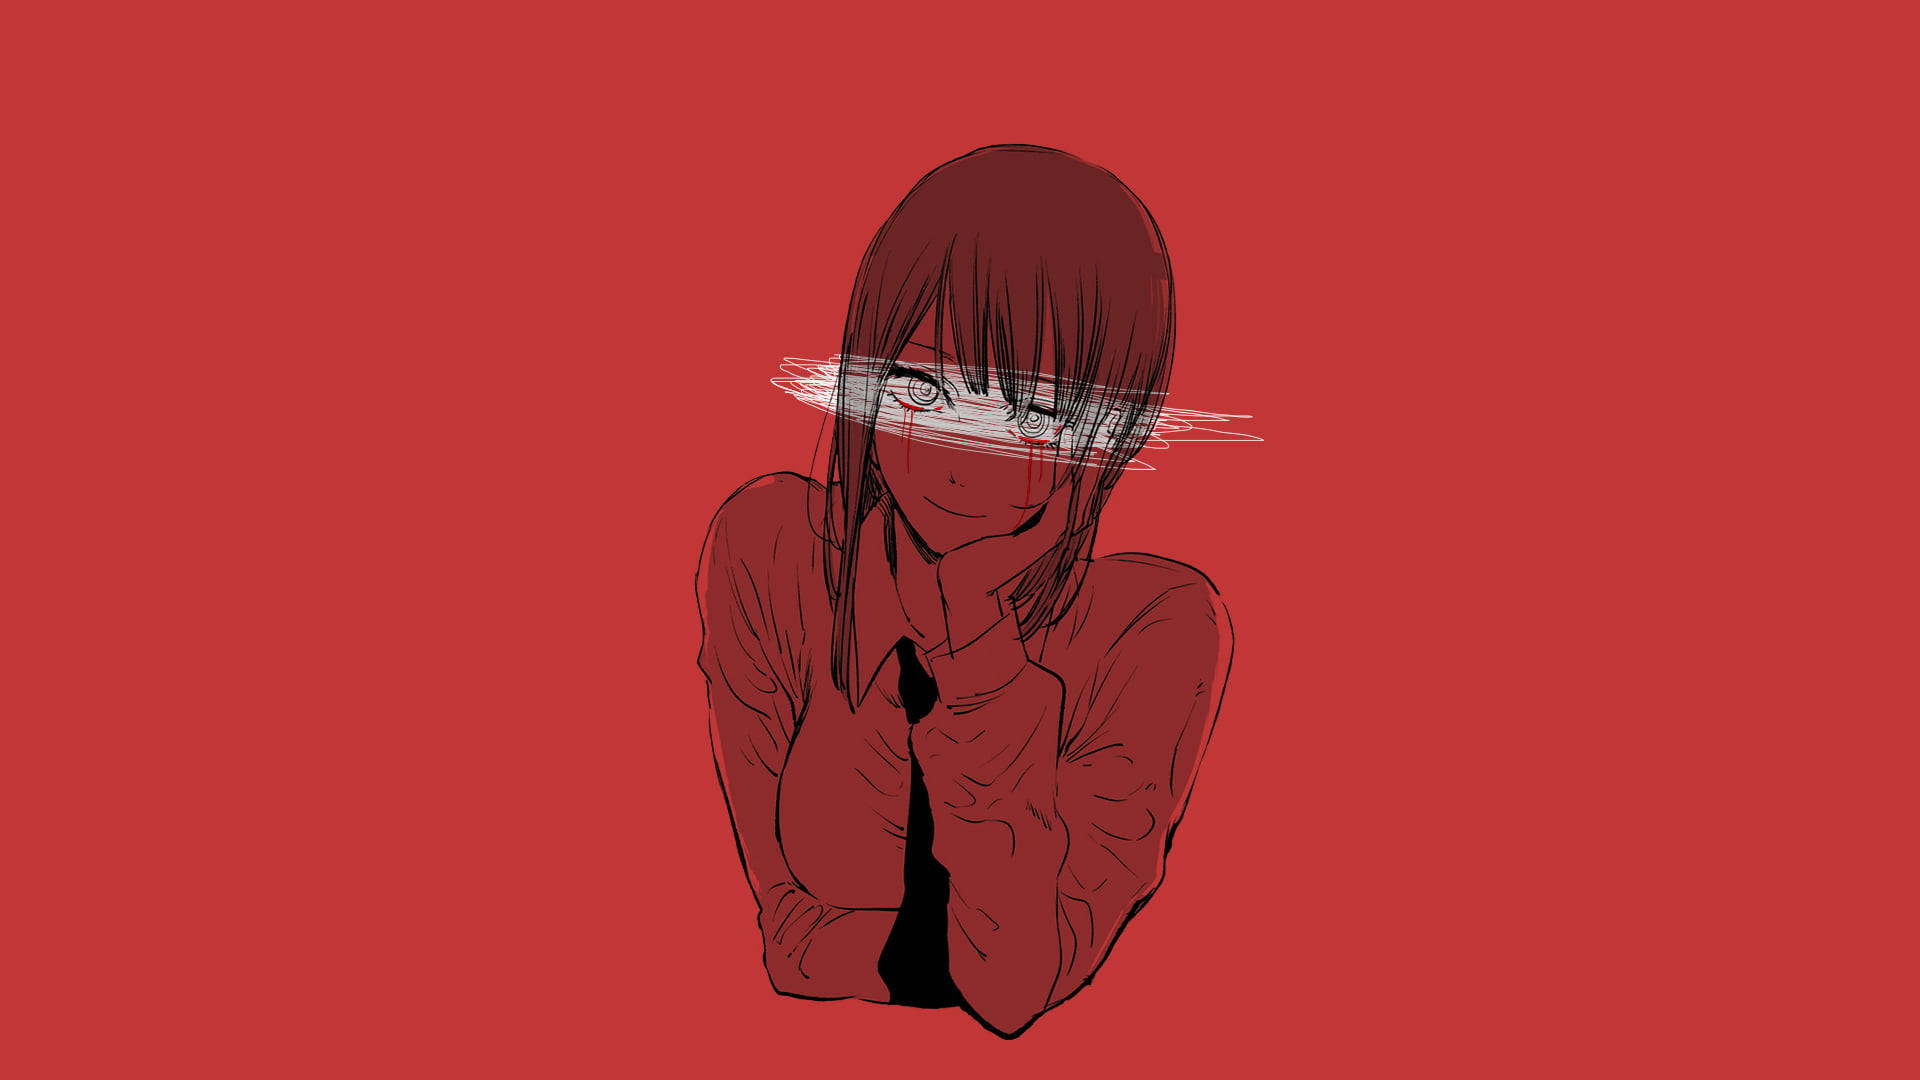 40+] Red and Black Anime Wallpaper - WallpaperSafari